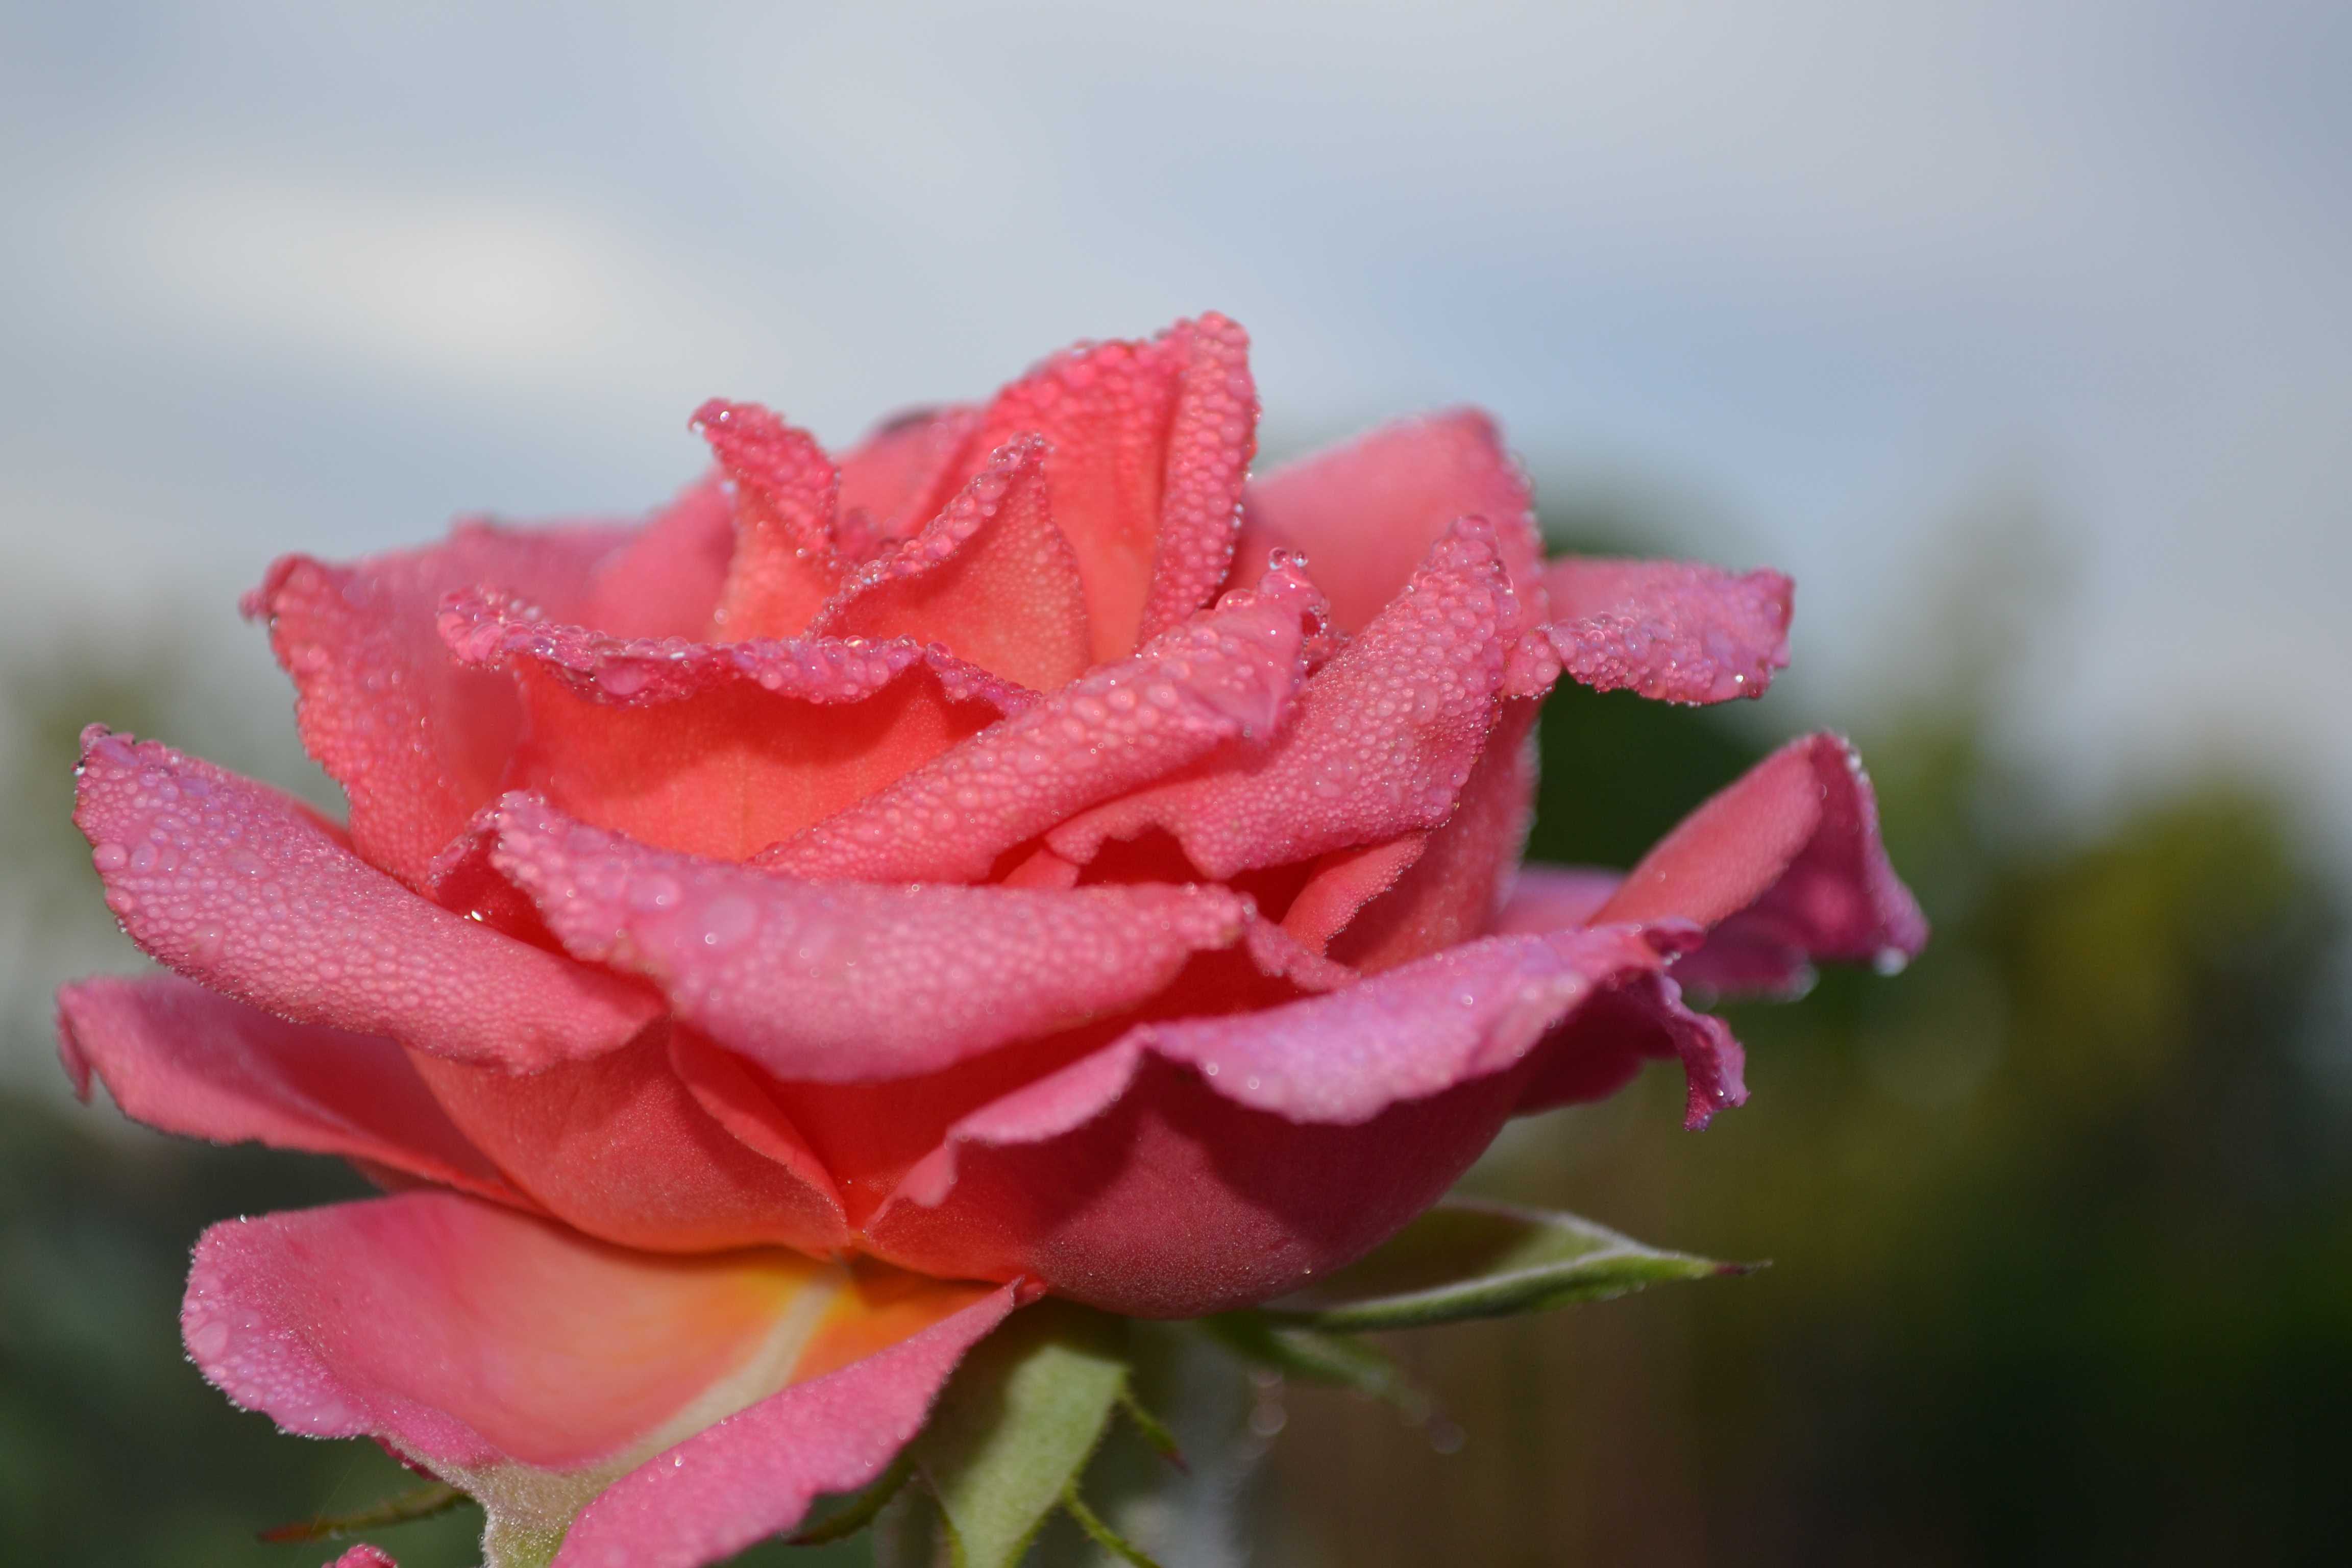 róża wielkokwiatowa na pniu, pnące i krzewiaste mix kolorów